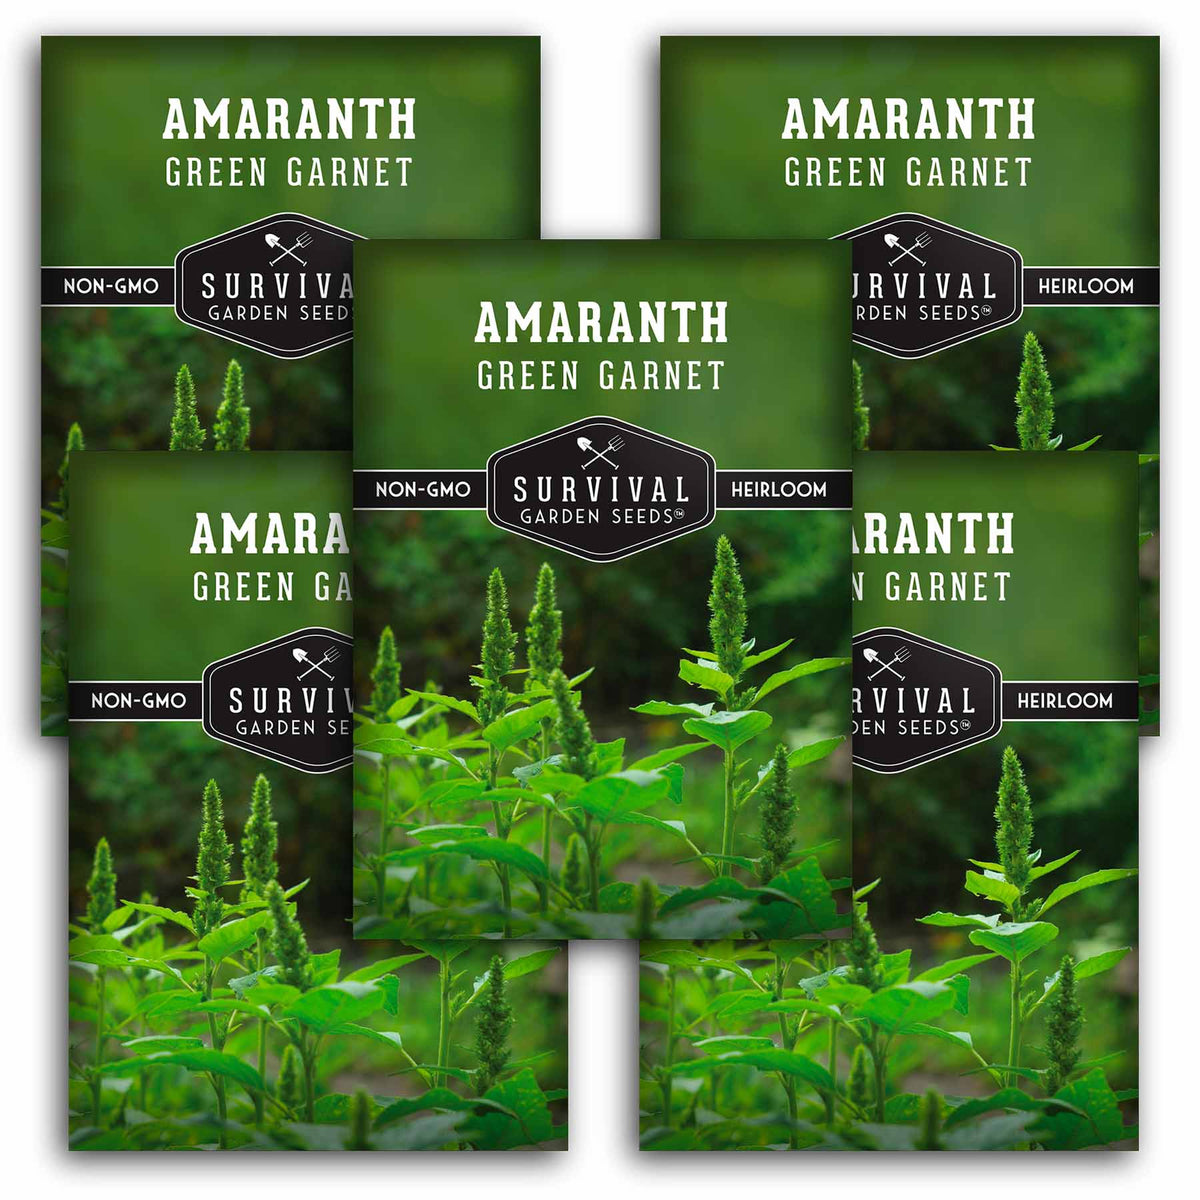 5 Packets of Green Garnet Amaranth seeds